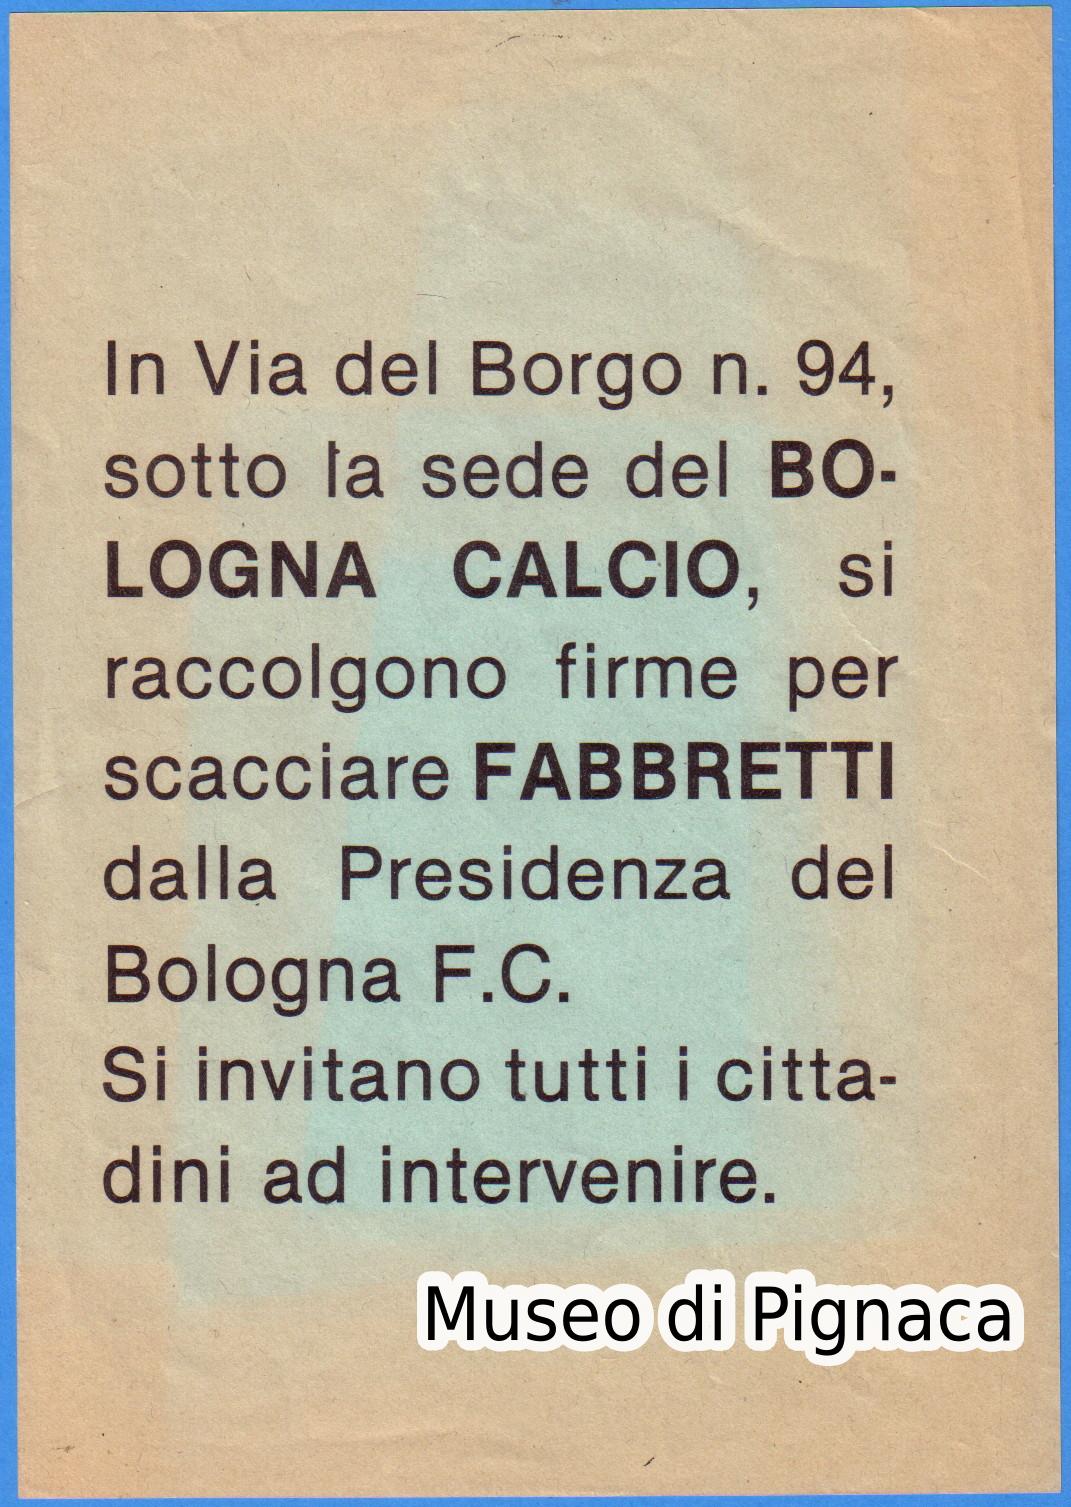 1982 - Il bologna retrocede e cede Mancini, la tifoseria si ribella contro il Presidente